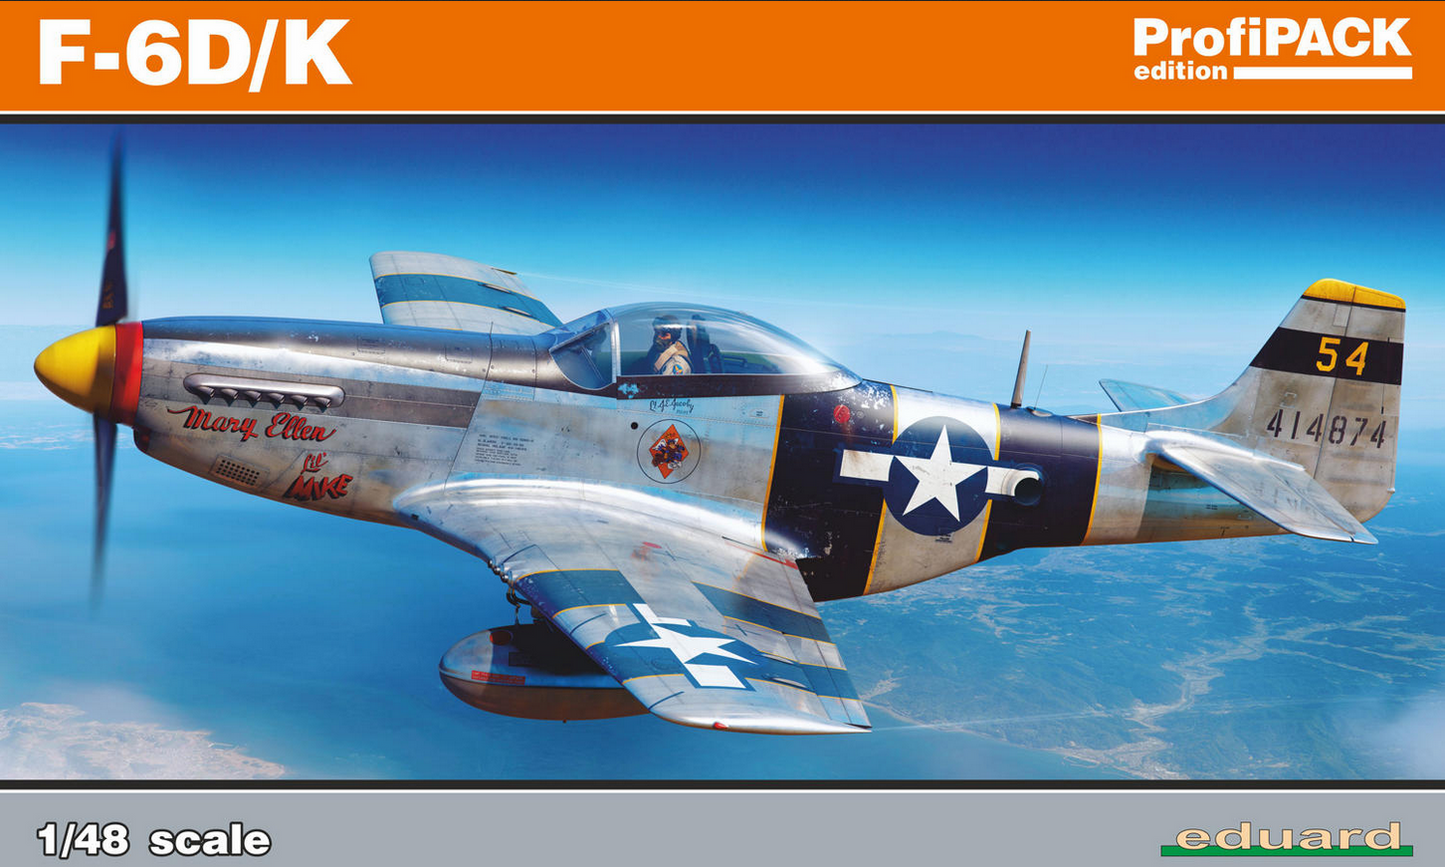 North American F-6D/K (P-51 Mustang) - Profipack - EDUARD 1/48